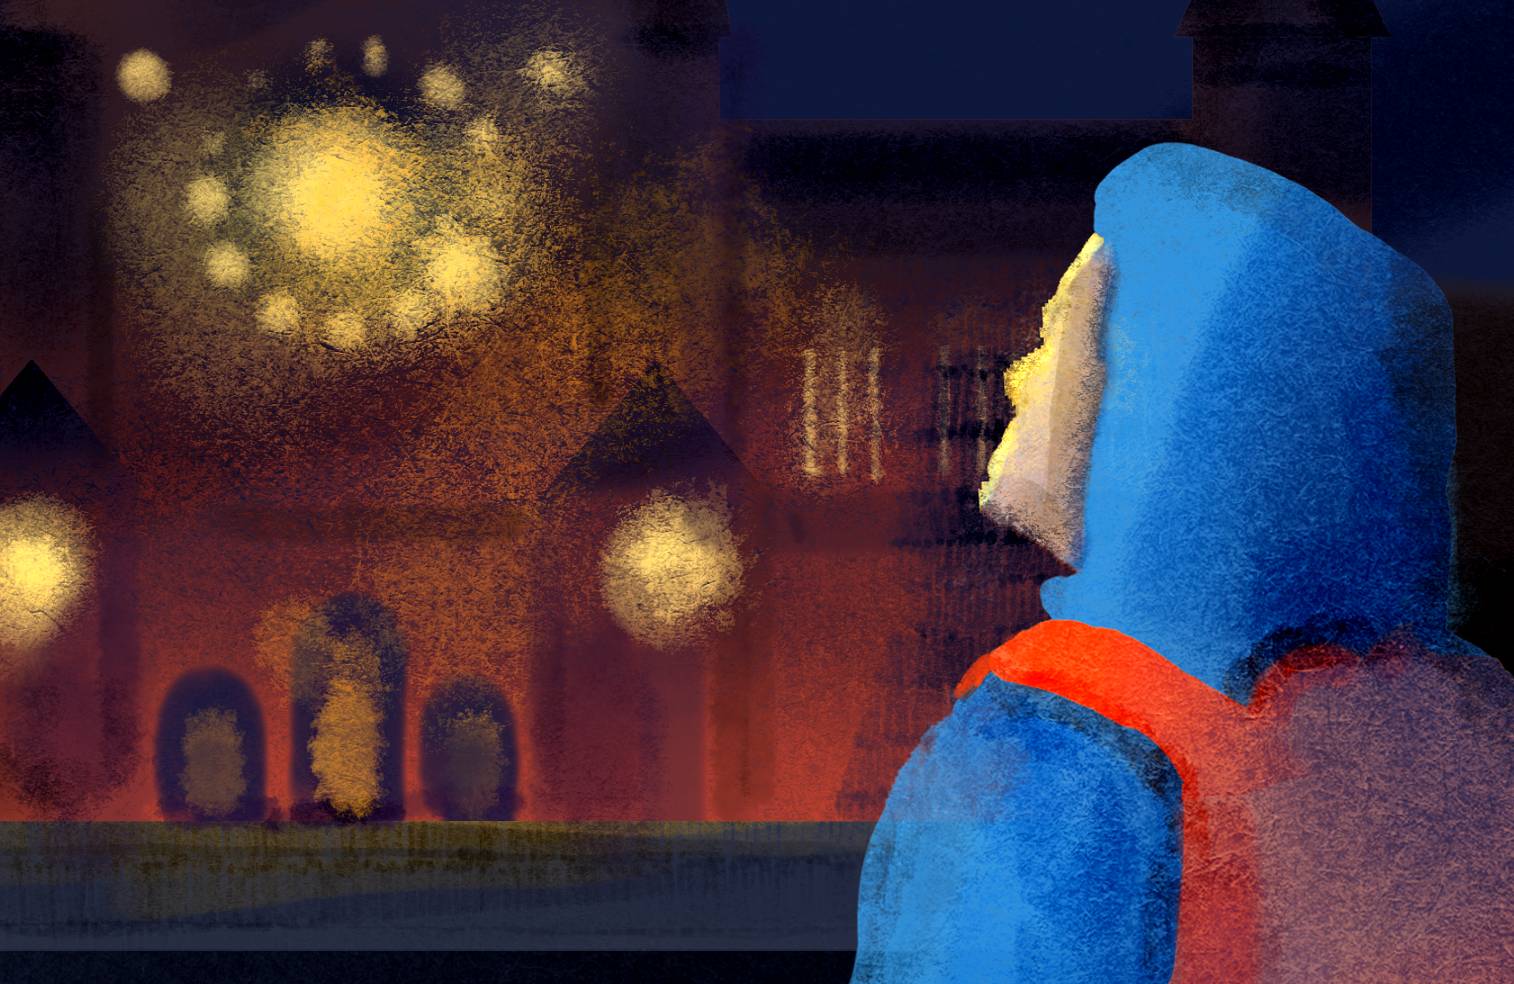 Ilustracja - postać na pierwszym planie w kurtce z kapturem narzuconym na głowę i plecakiem patrzy na rozświetlony budynek kościoła. Azyl kościelny